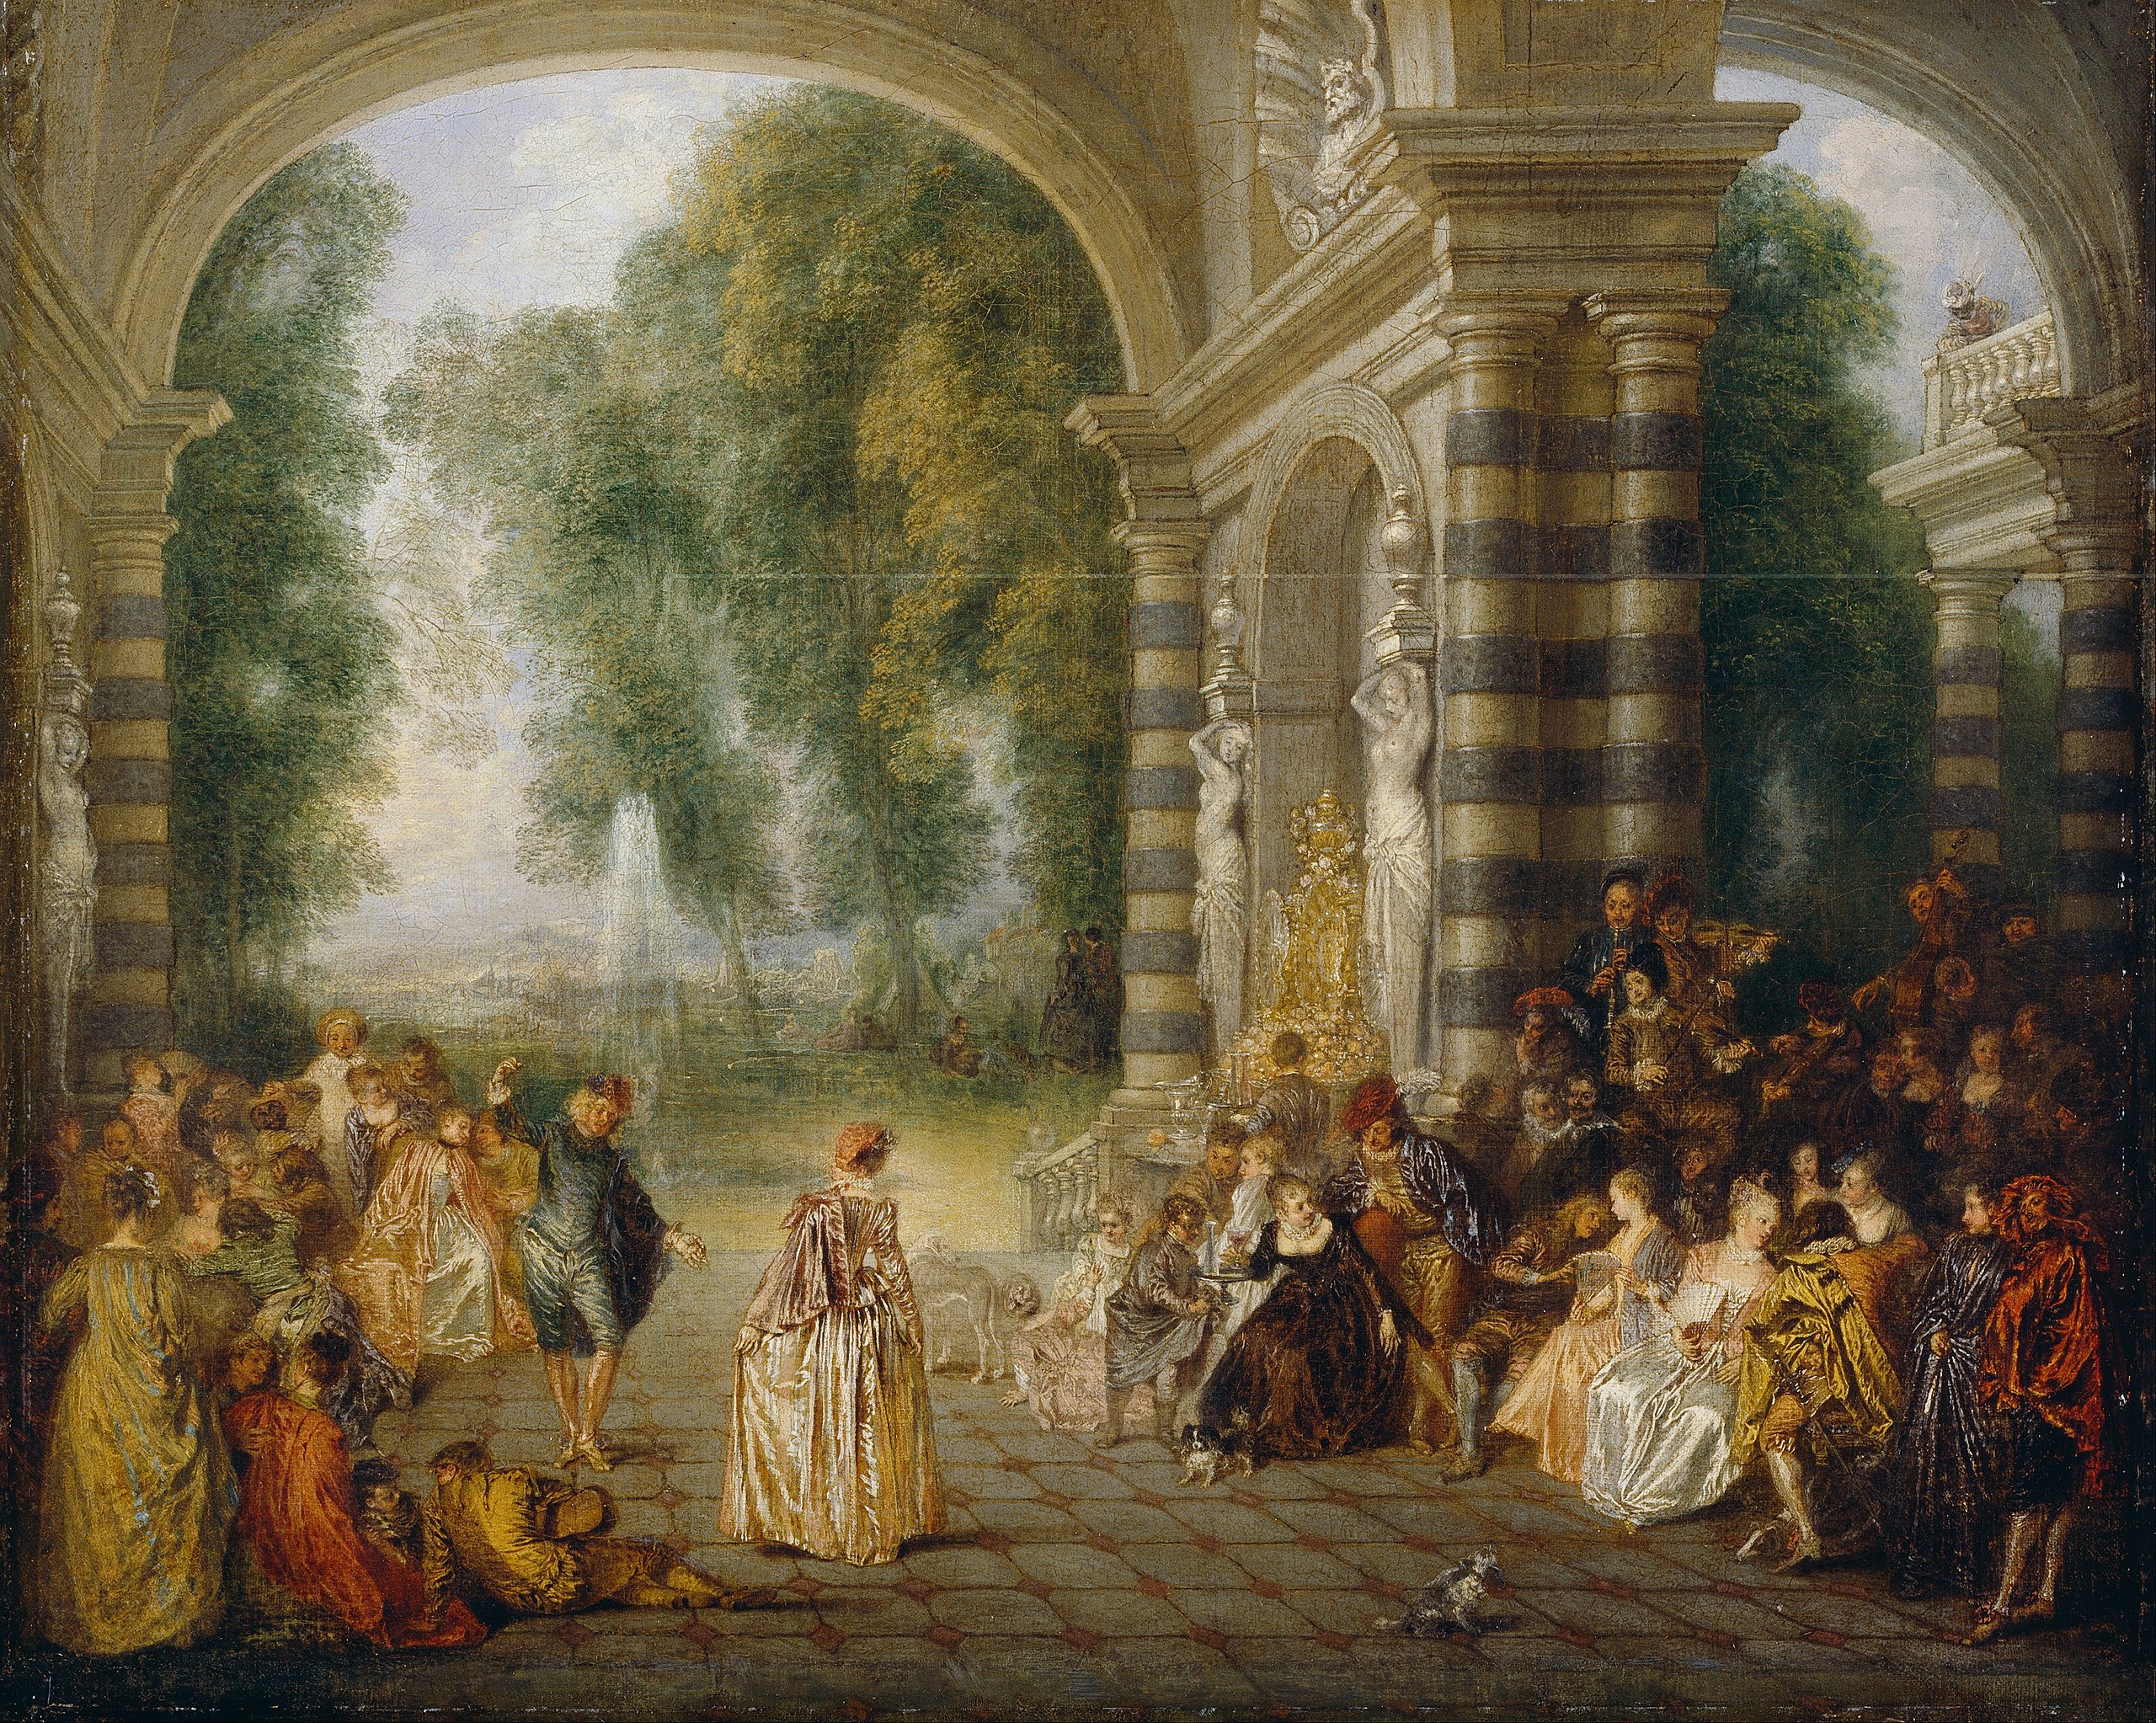 Les plaisirs du bal by Antoine Watteau - vers 1715-17 - 52,5 x 65,2 cm Dulwich Picture Gallery